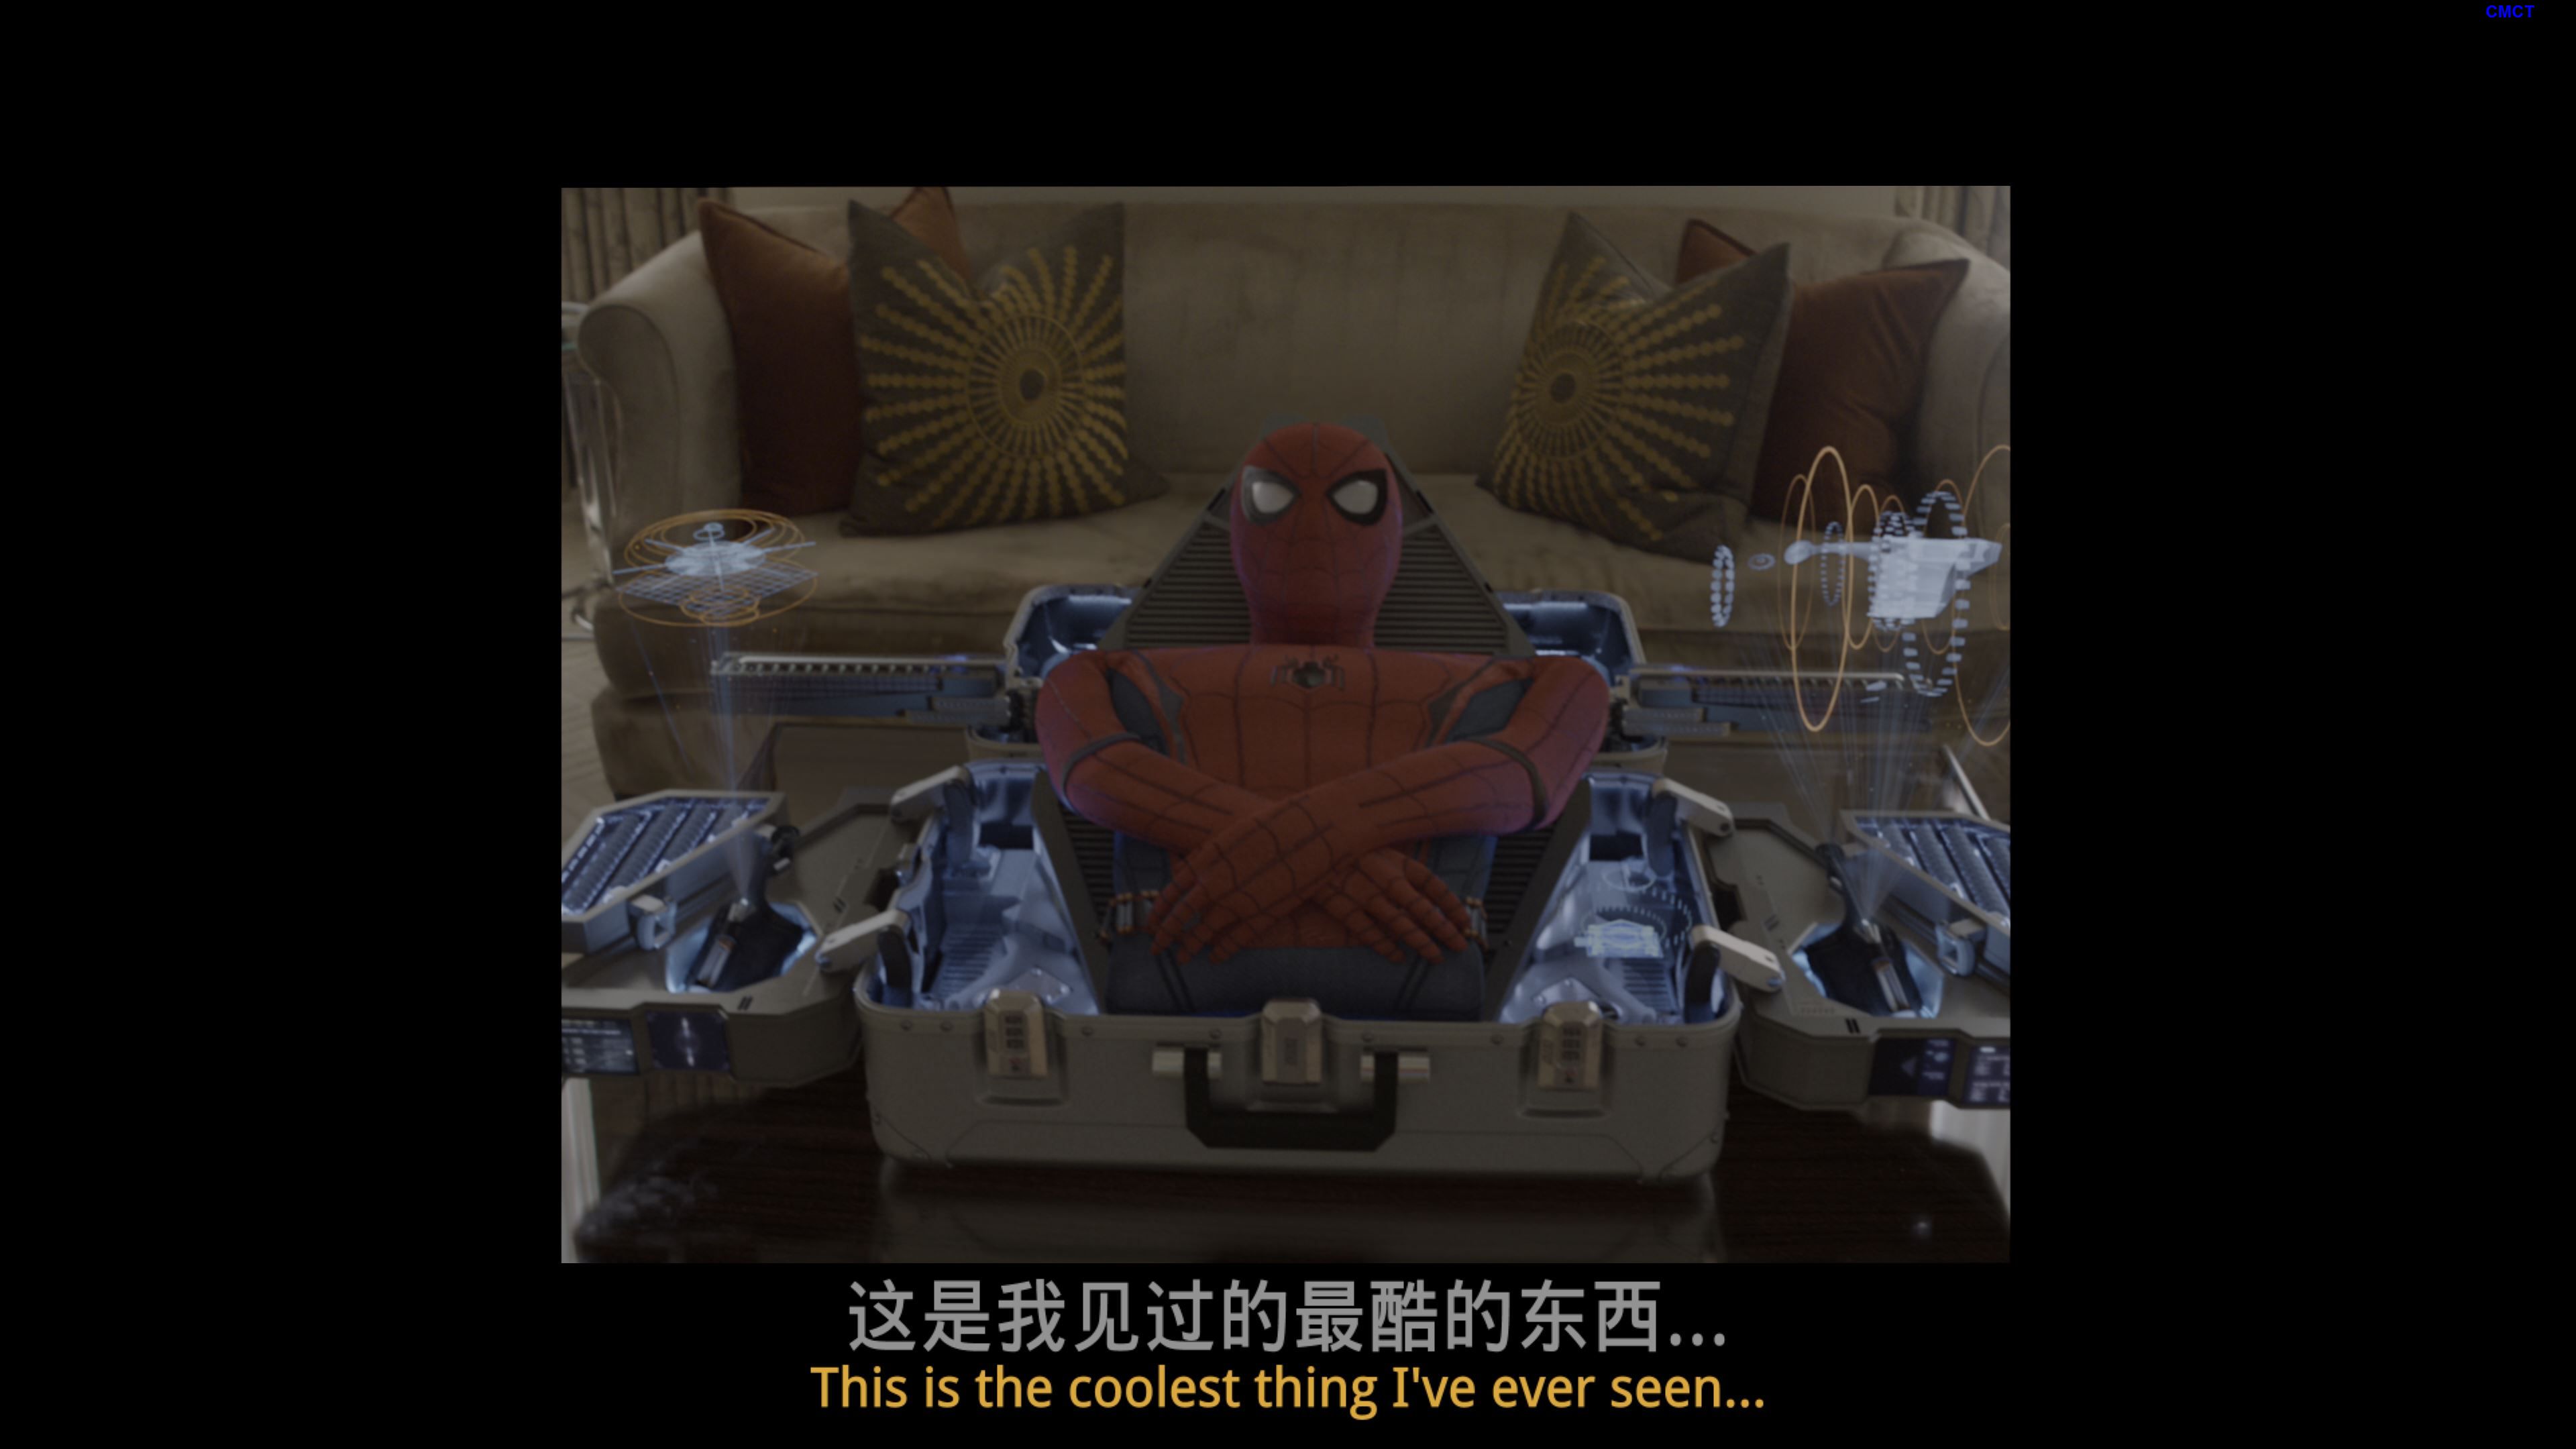 蜘蛛侠: 英雄归来 [保留dolby vision][次时代国语][国配/简/繁/双语特效字幕] Spider-Man.Homecoming.2017.2160p.UHD.Blu-Ray.HEVC.Atmos.TrueHD.7.1-CMCT    [61.64 GB]-8.jpg